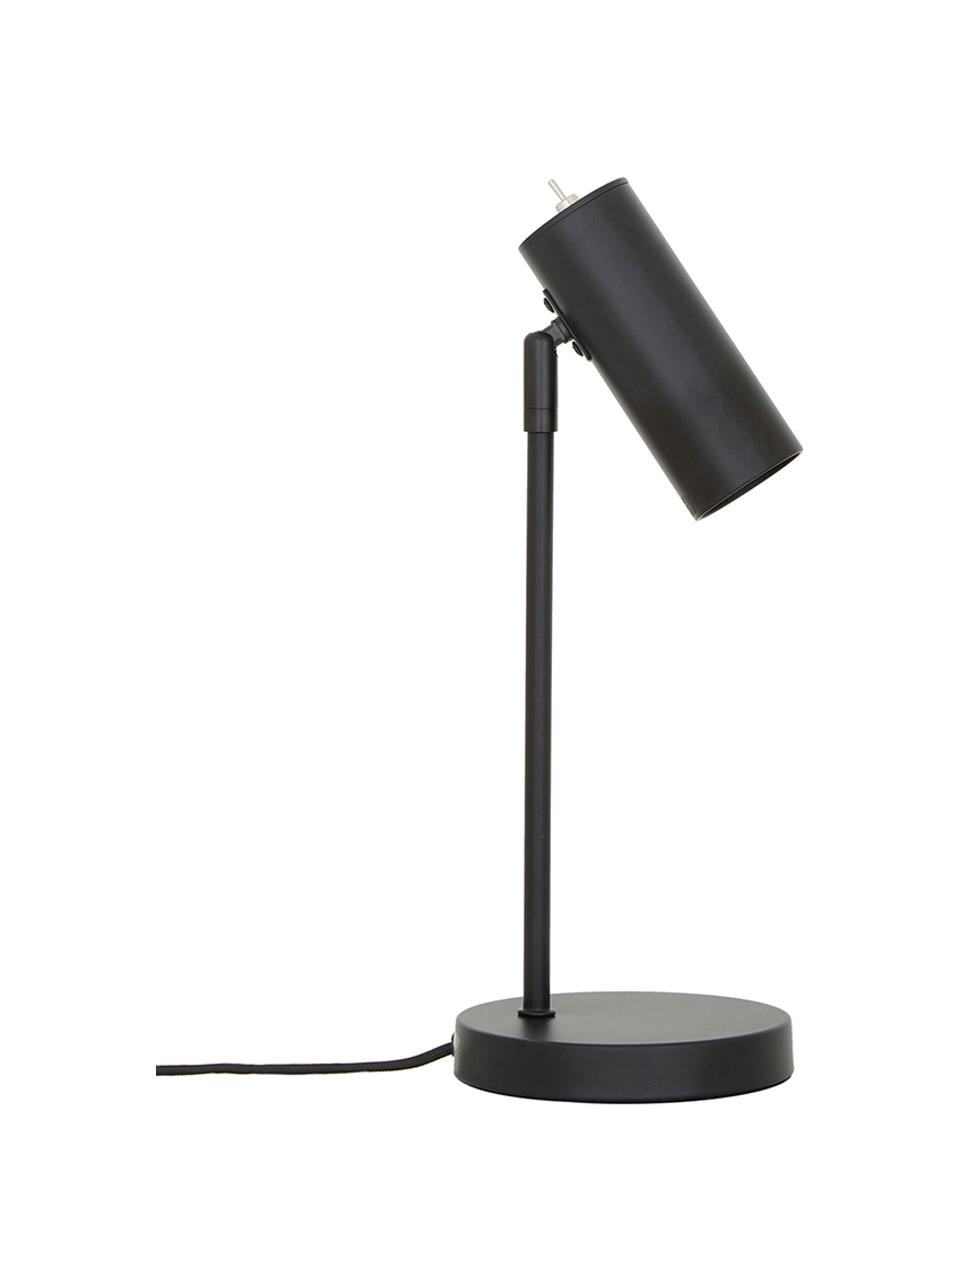 Moderne bureaulamp Cassandra van metaal, Lampenkap: gepoedercoat metaal, Lampvoet: gepoedercoat metaal, Lampenkap: mat zwart. Lampvoet: mat zwart. Snoer: zwart, Ø 15 x H 40 cm